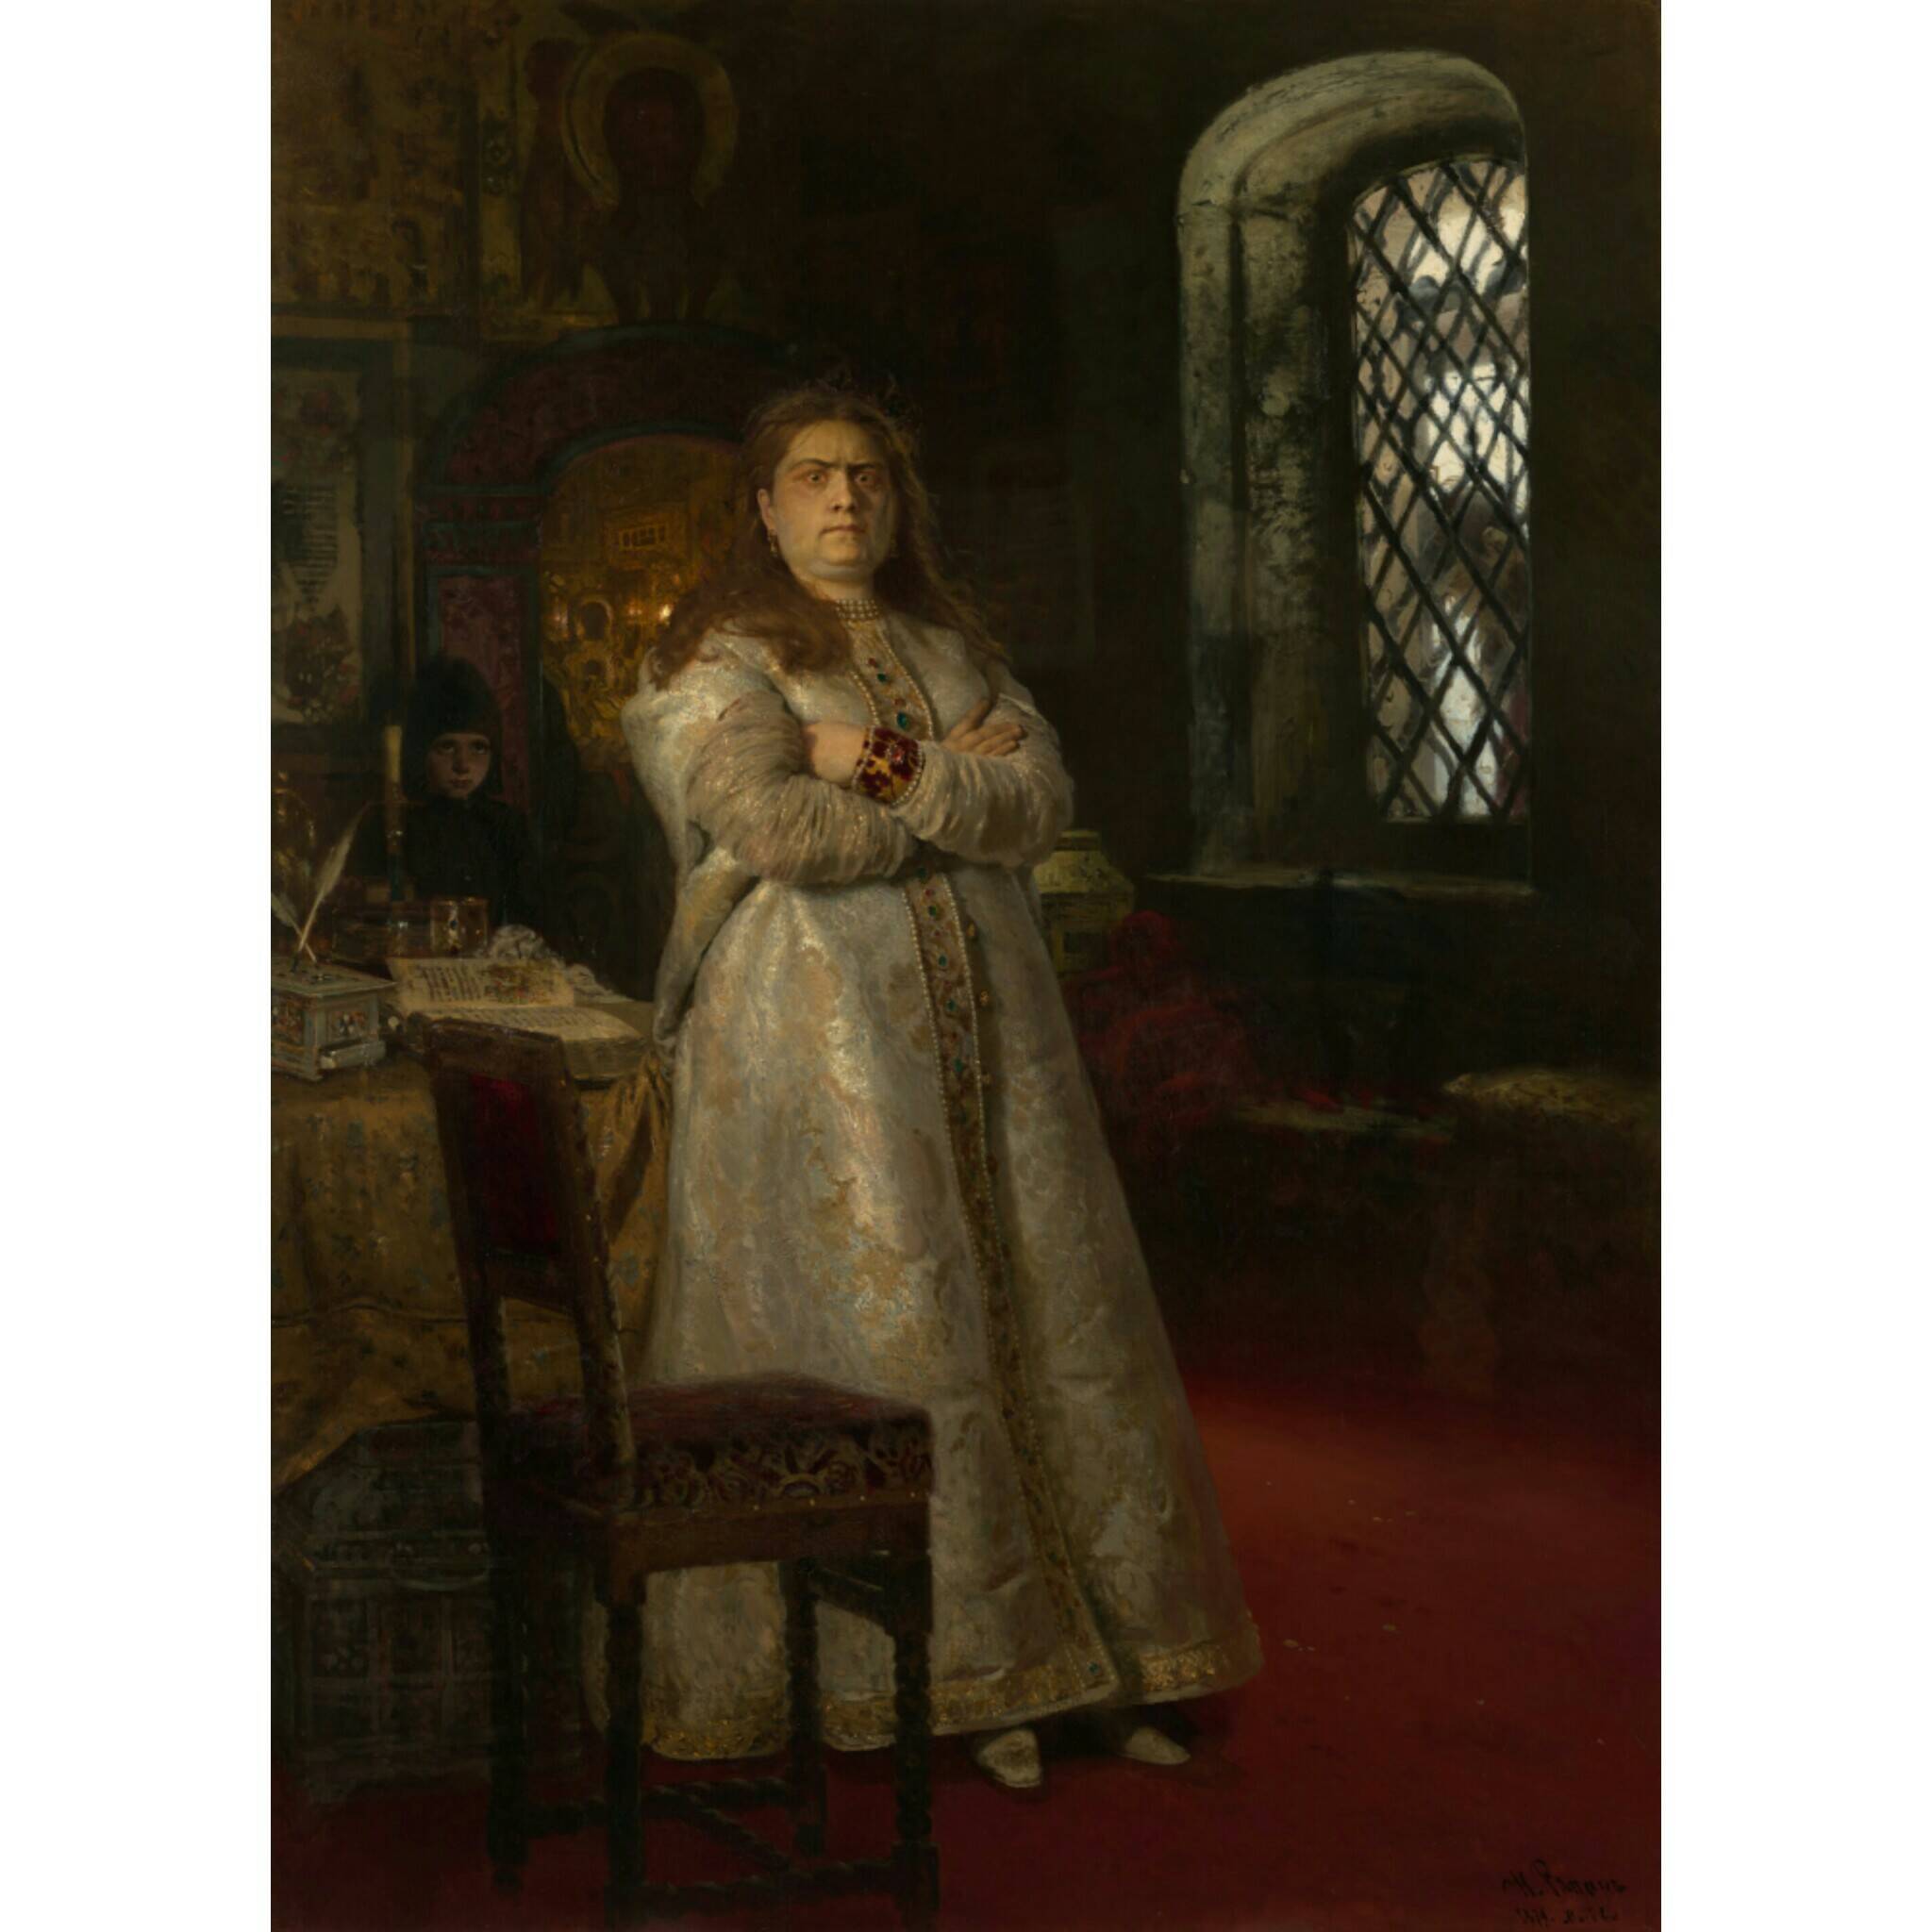 И.Е. Репин «Царевна Софья», 1879 год. Из собрания Третьяковской галереи